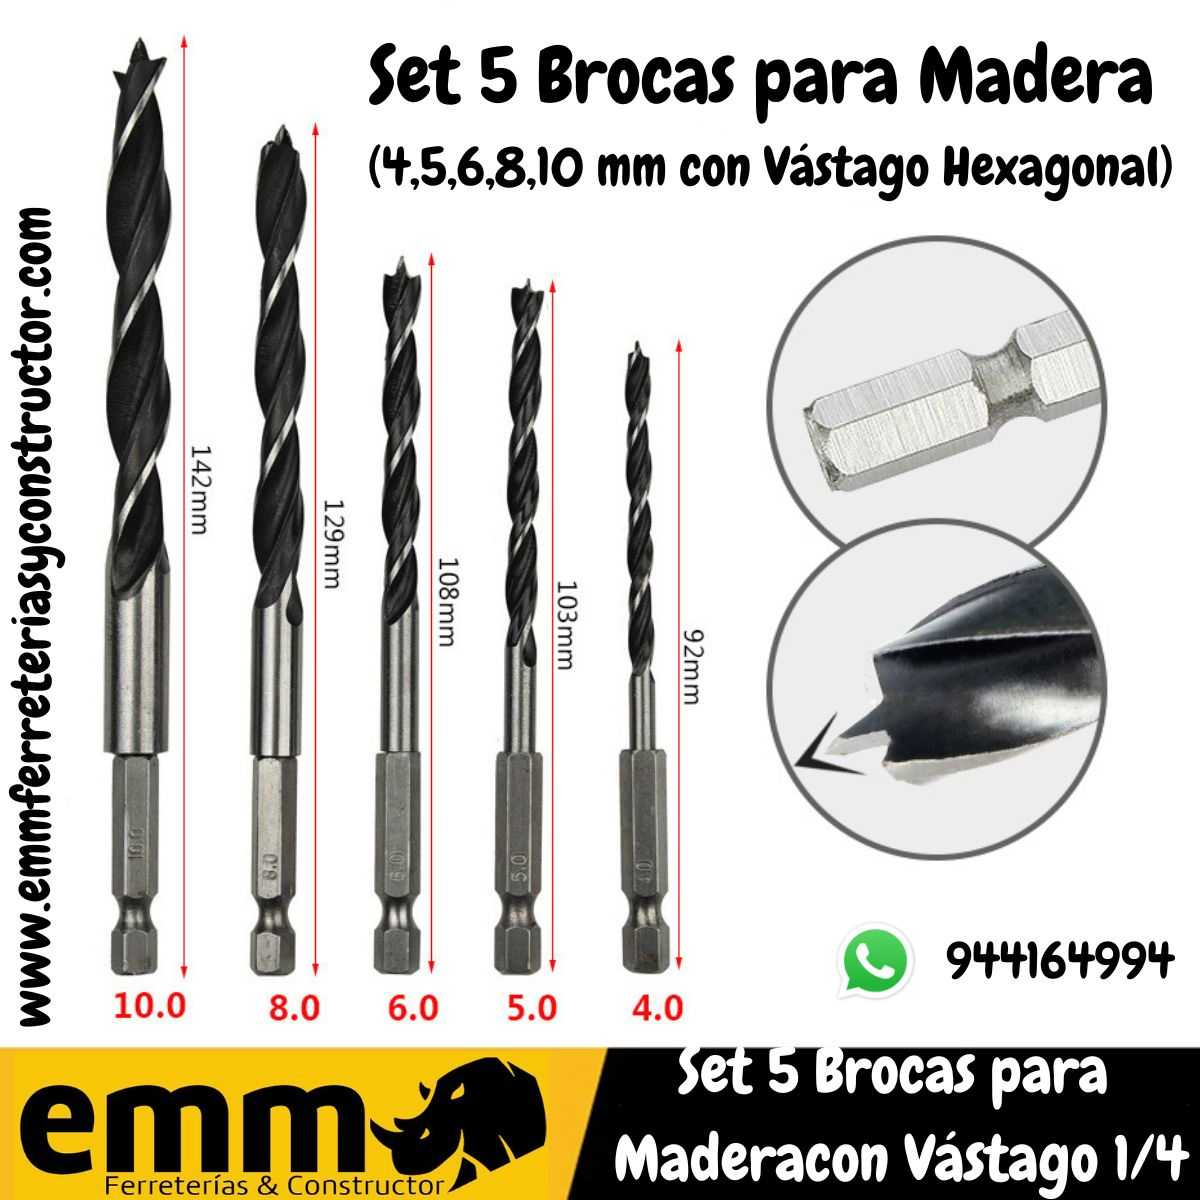 Juego de 5 Brocas para Madera (4,5,6,8,10 mm con Vástago Hexagonal) - EMM  Ferreterías & Constructor